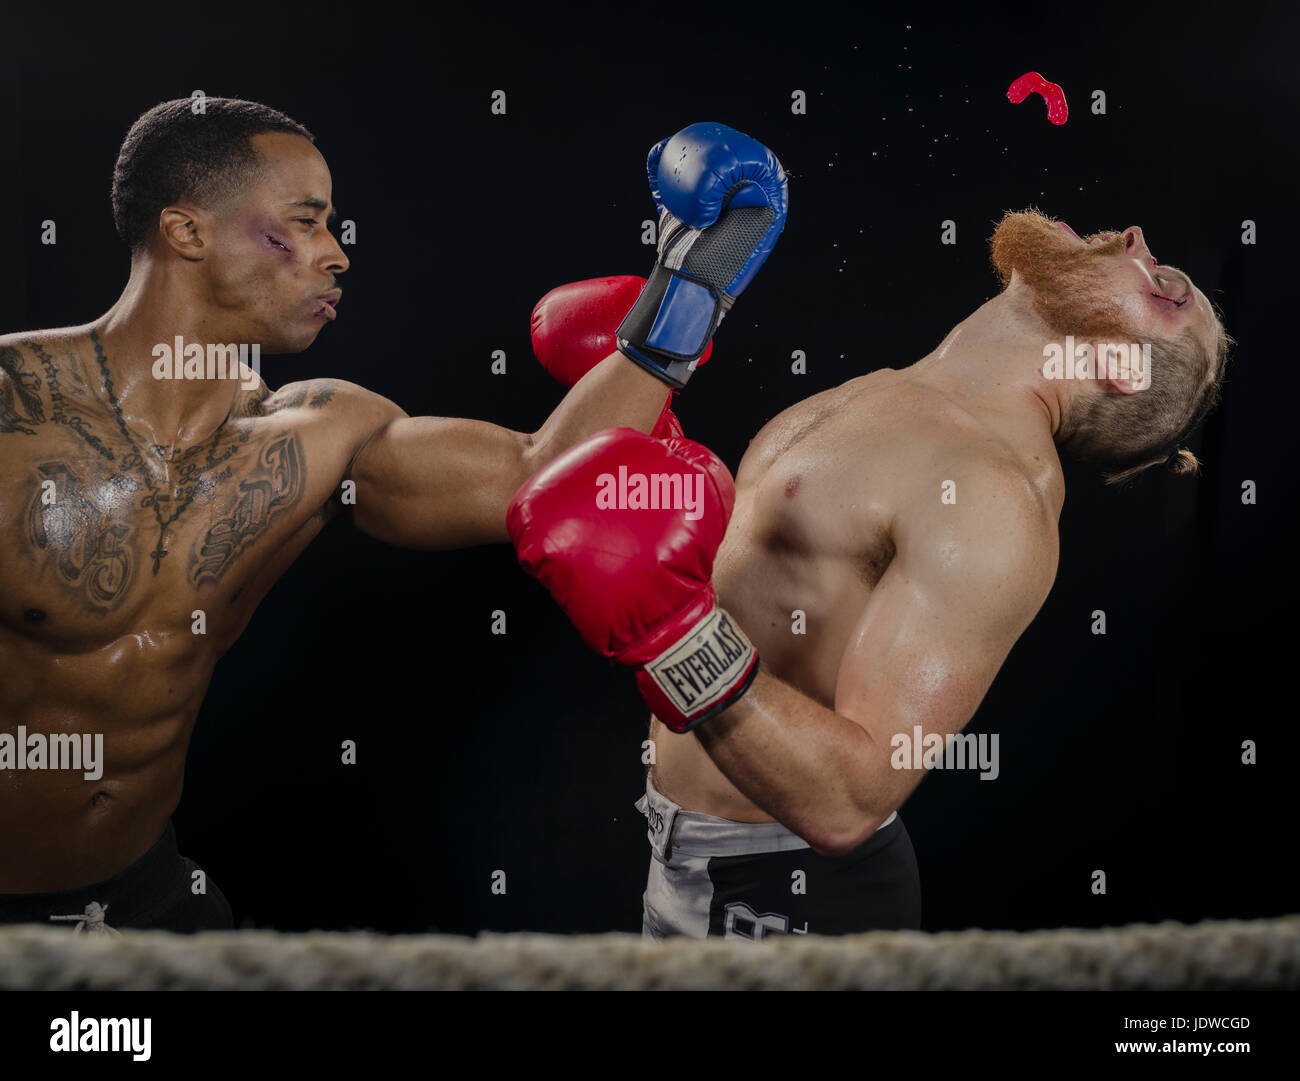 Boxer / Fighter knockout K.O Stock Photo - Alamy